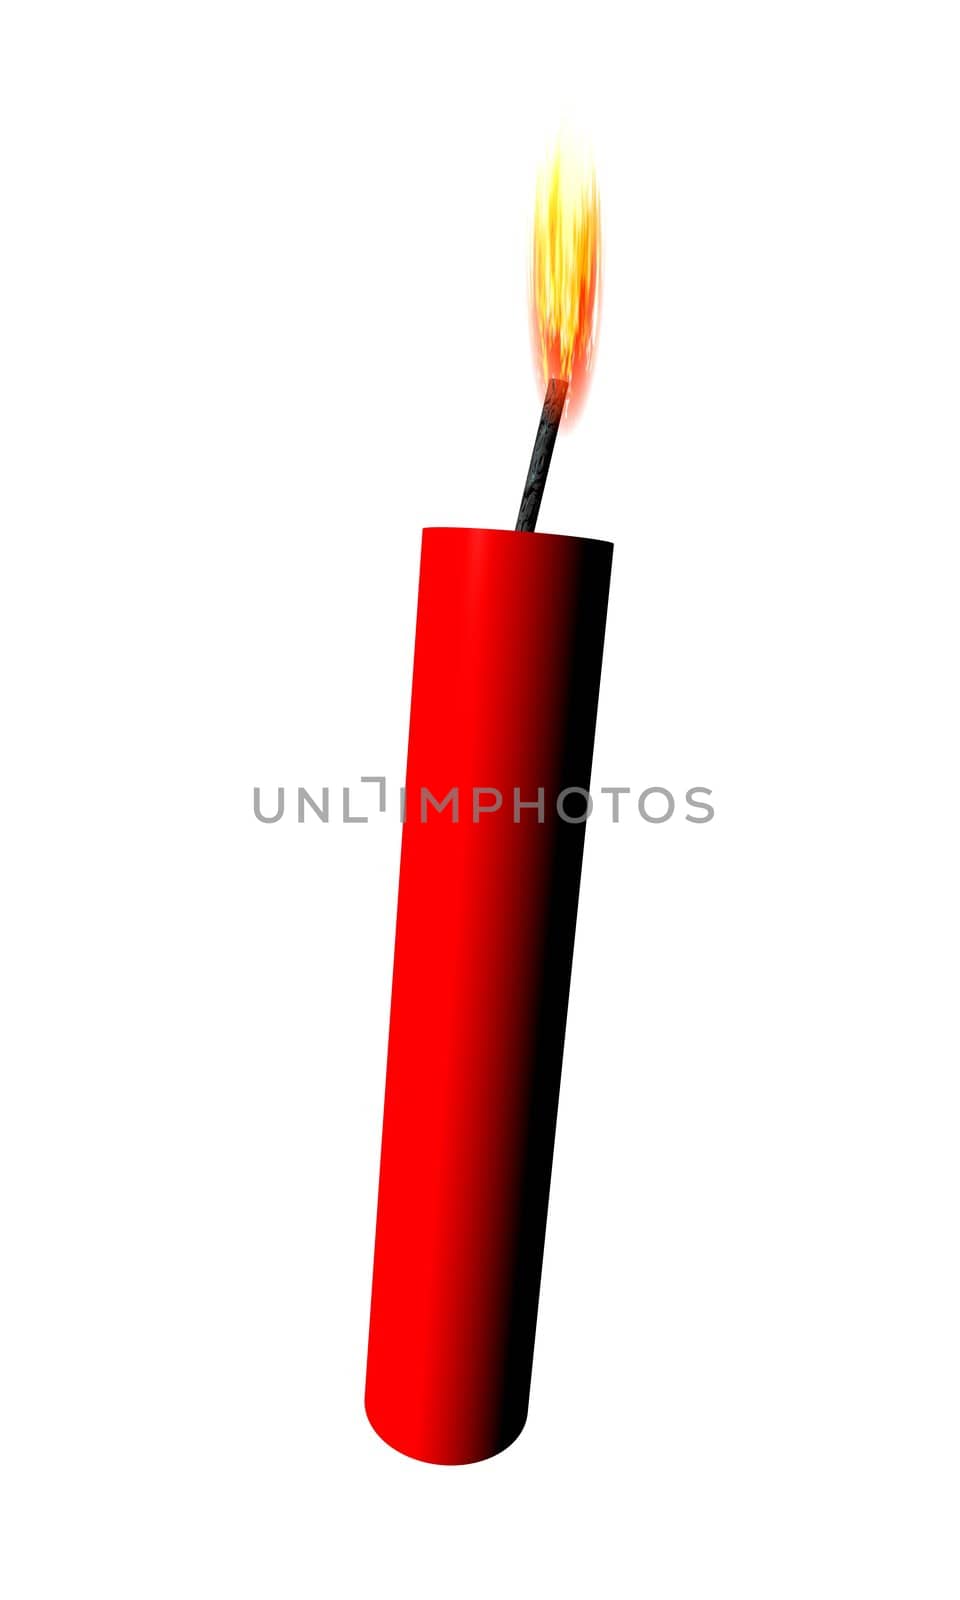 Illustration of a stick of dynamite.